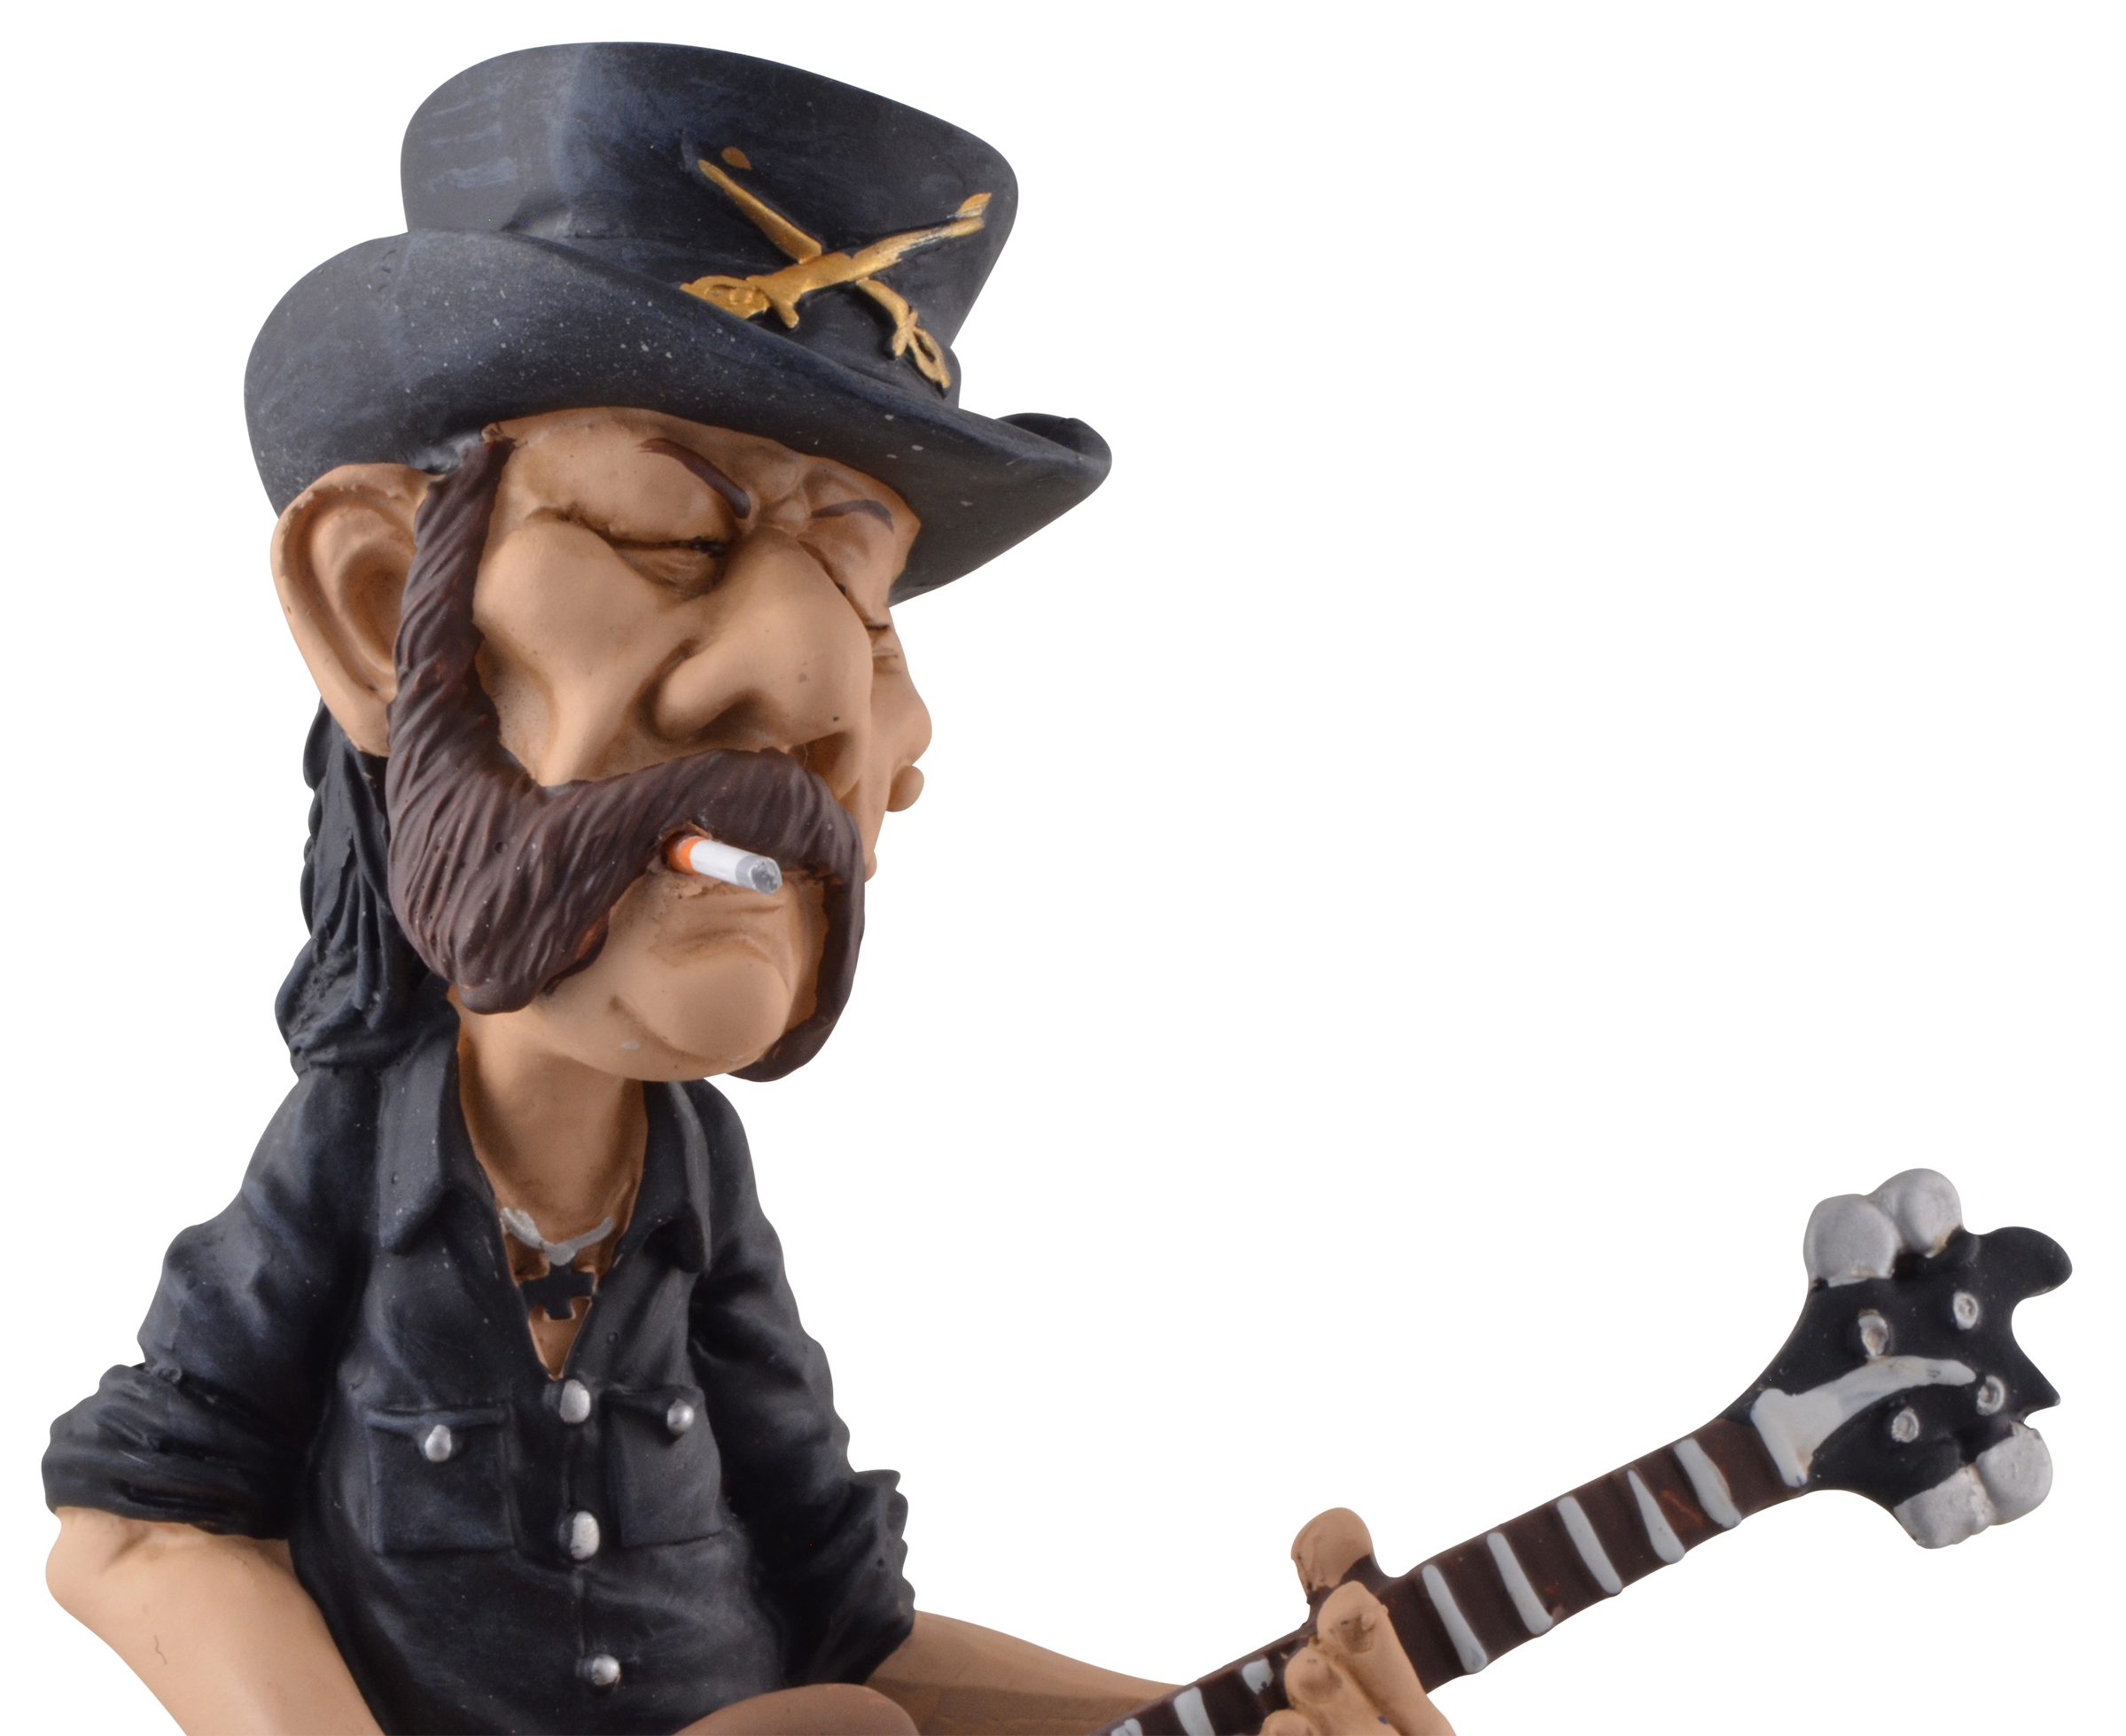 Vogler direct Gmbh Dekofigur Rockstar Lemmy bemalt, LxBxH: der Band lautesten Hand der Stratford, 12x9x20cm von Warren von Welt